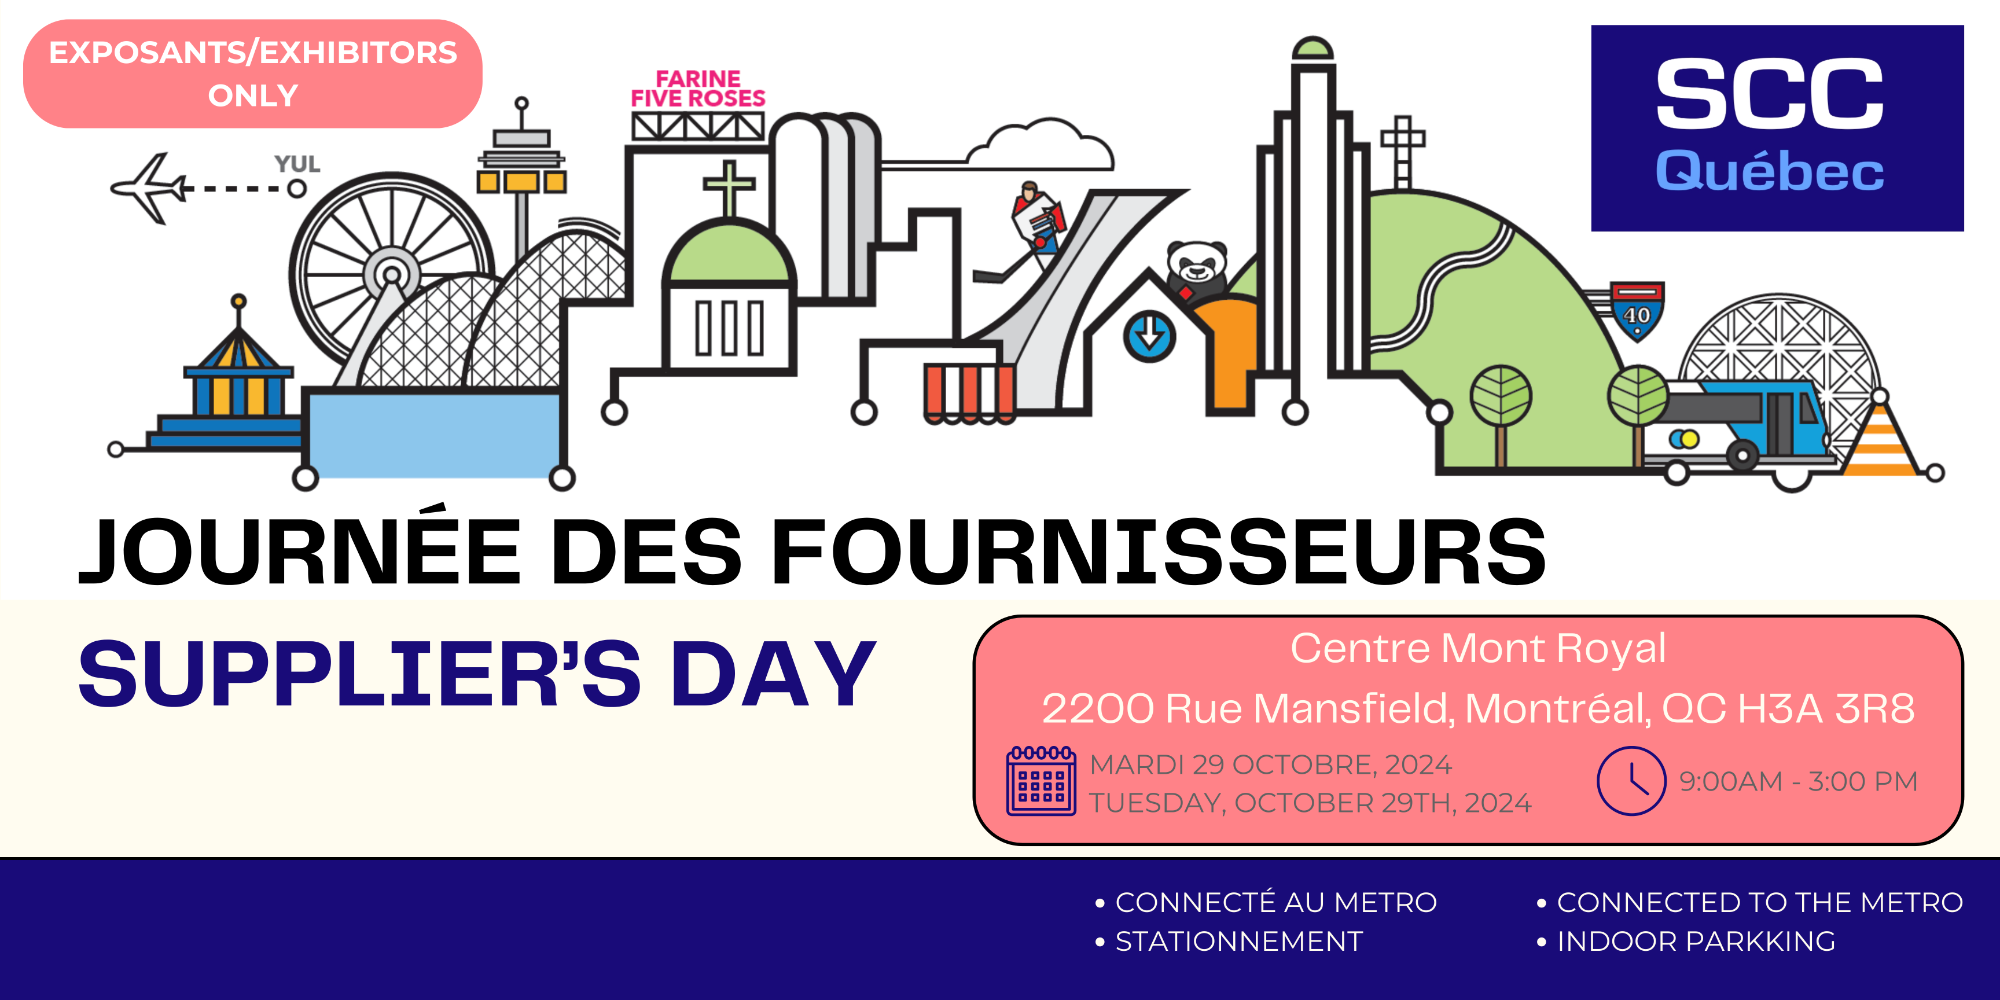 Journée des fournisseurs - Supplier's day - Montreal (EXHIBITORS)